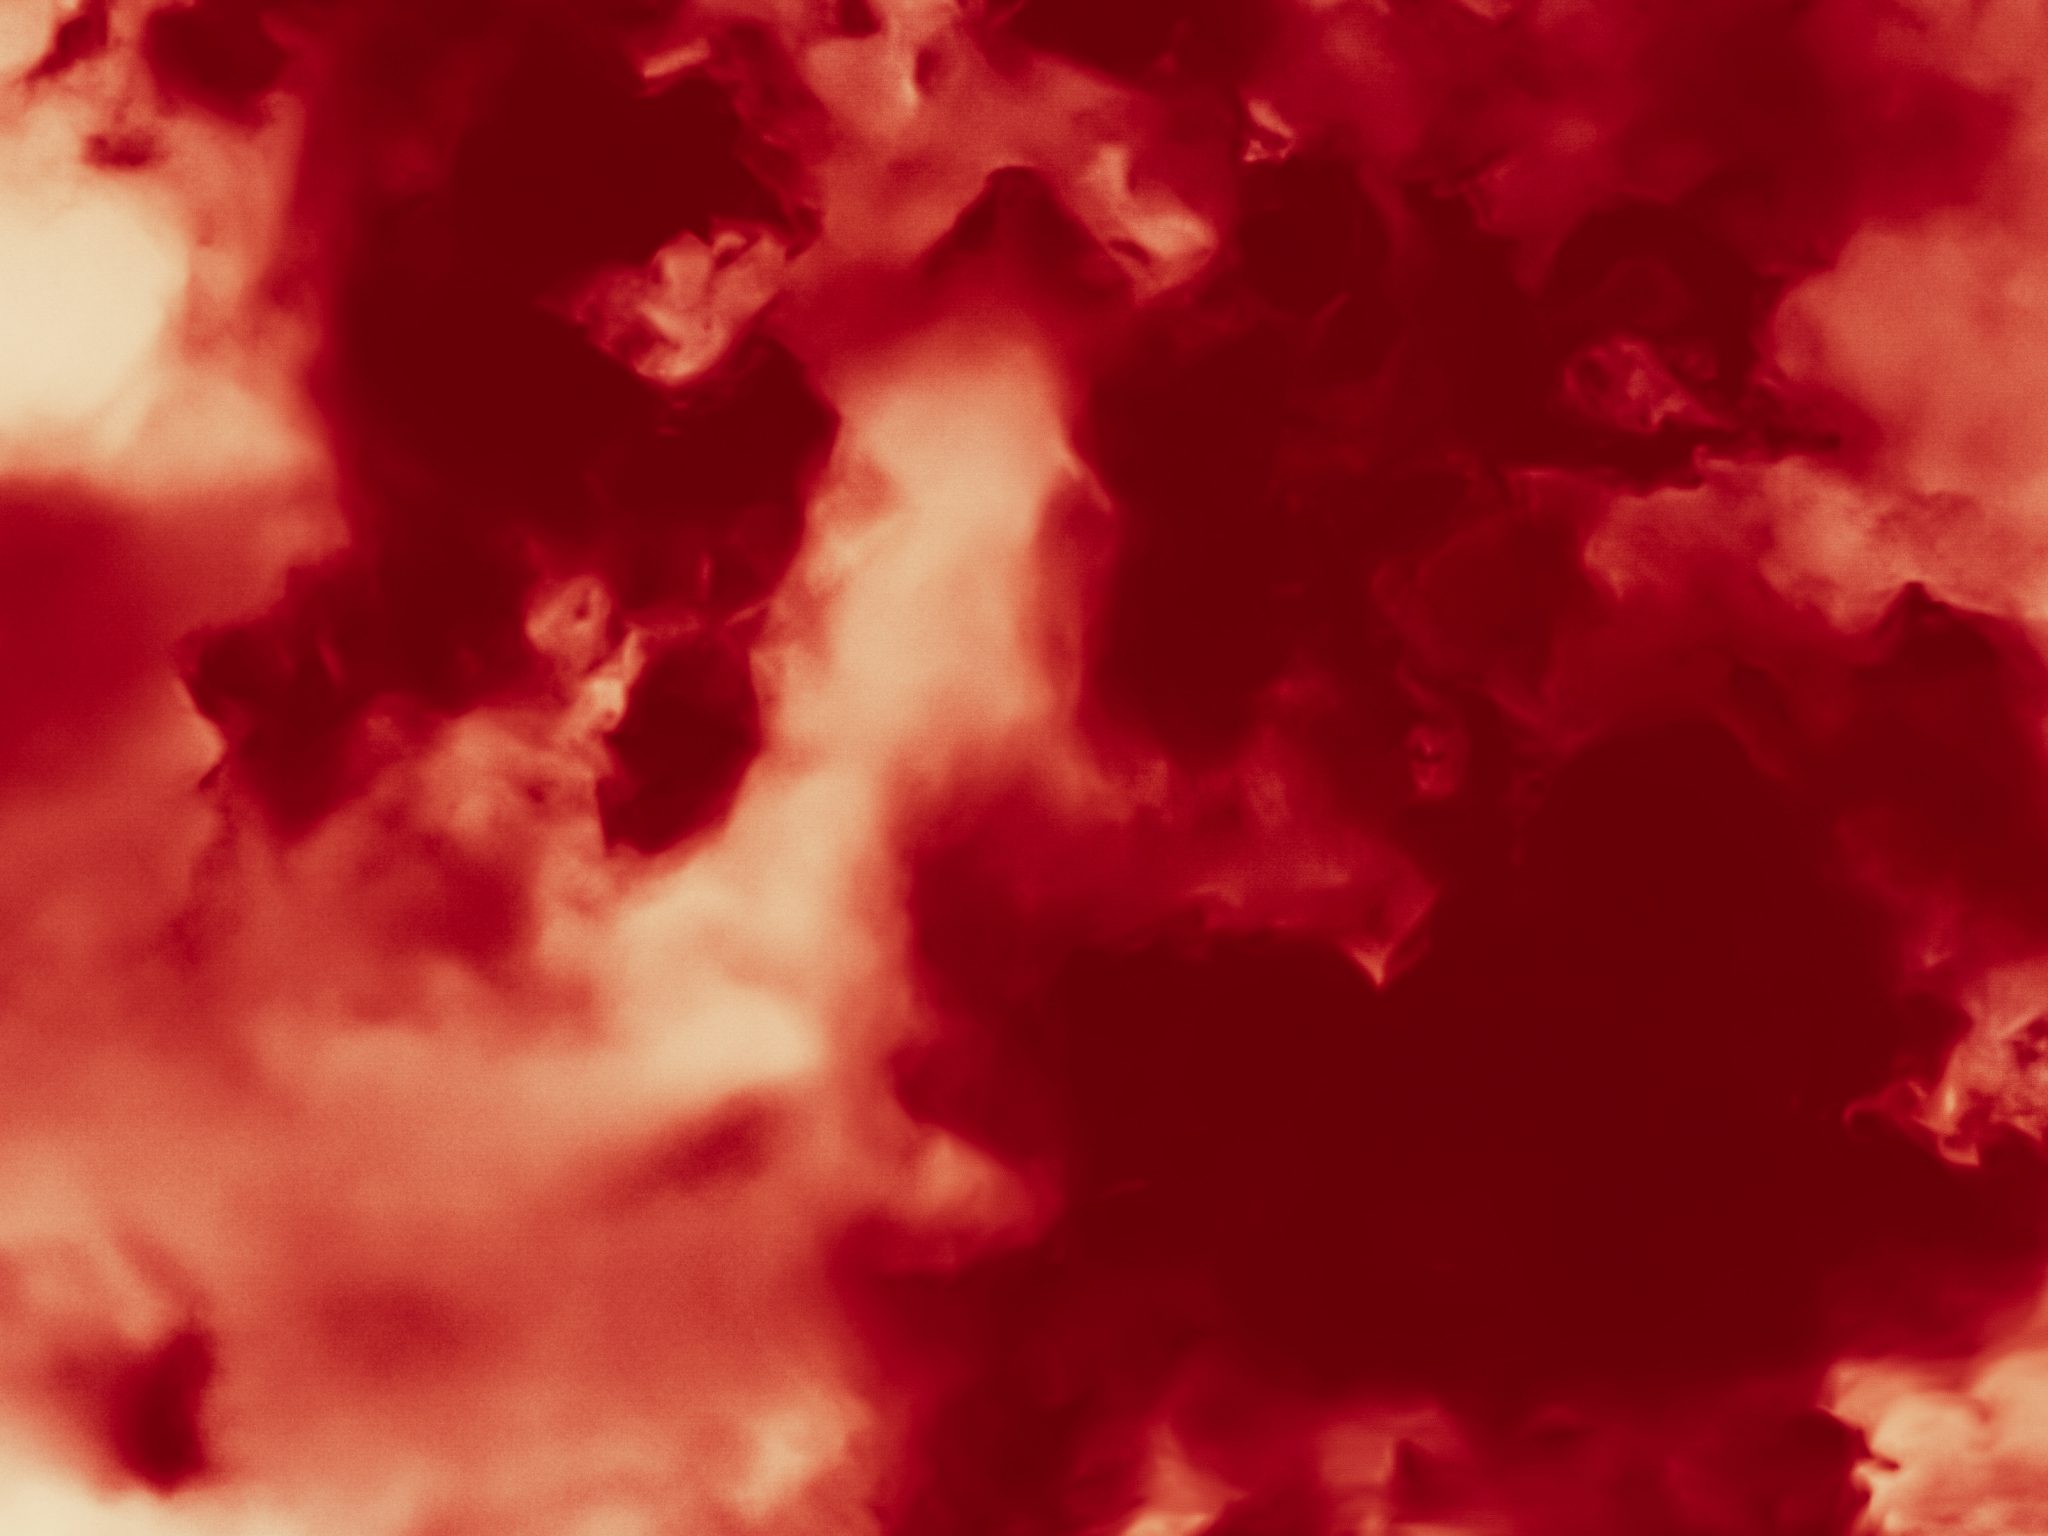 2048x1536 wallpaper Minimalist Hot Fire Flames Red Clouds iPad Wallpaper 2048x1536 pixels resolution